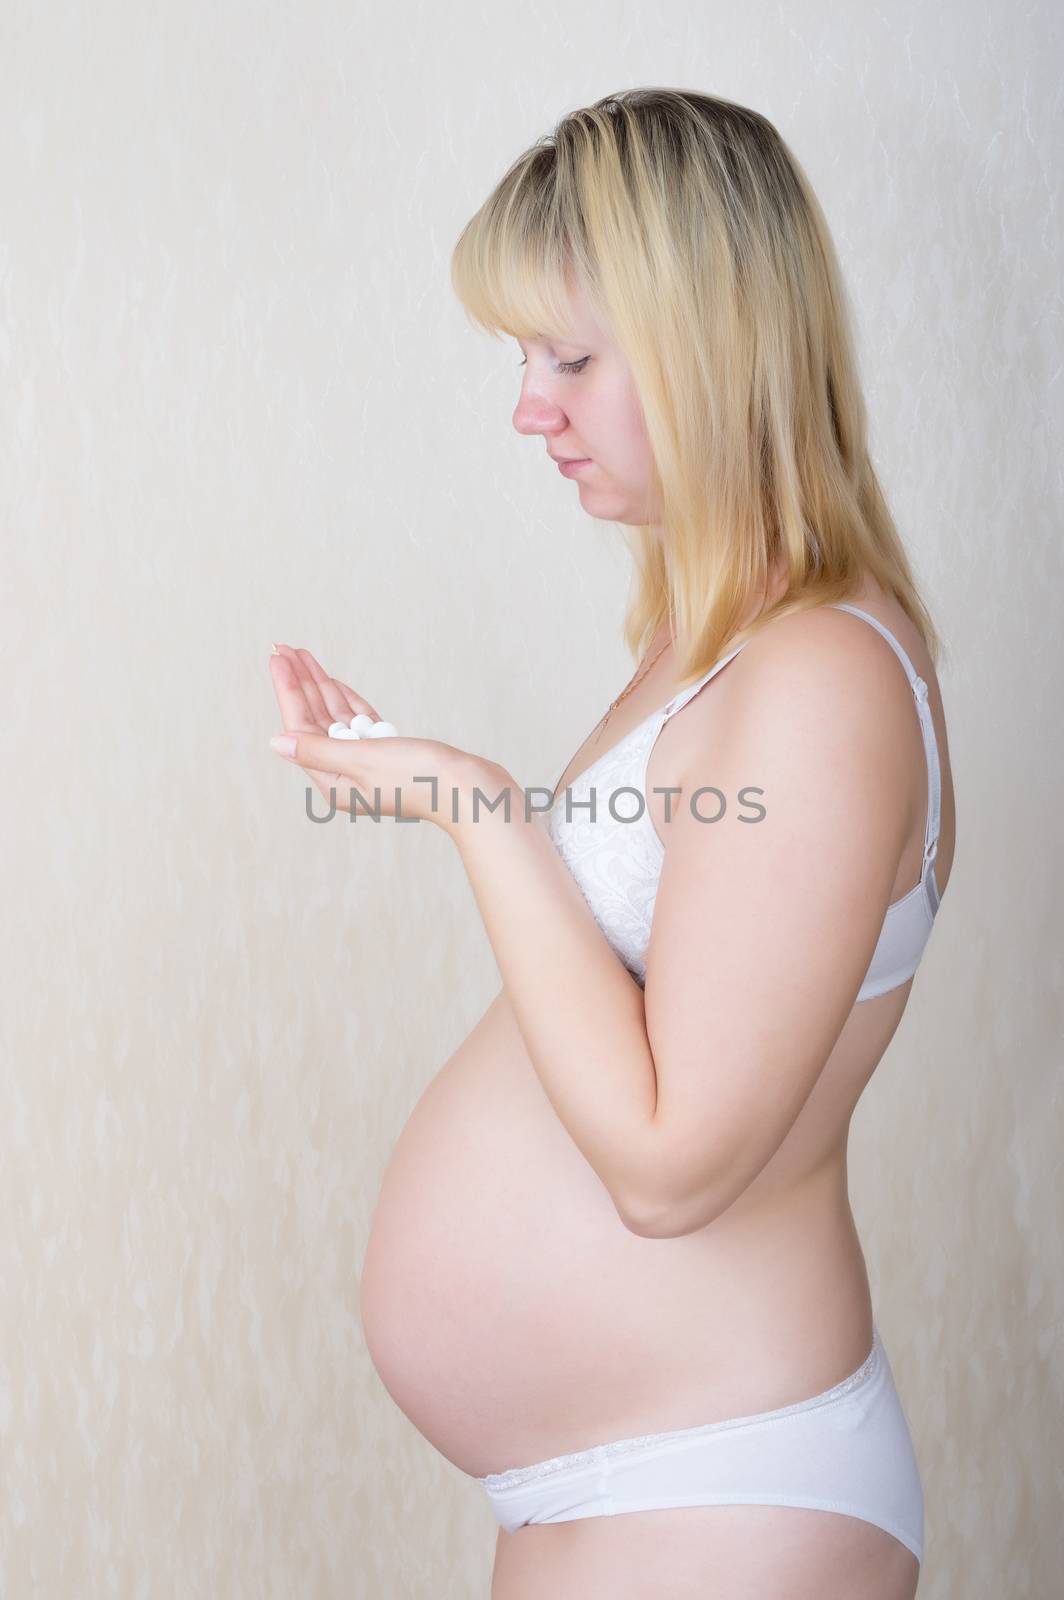 Treatment of the expectant mother by kromeshnik